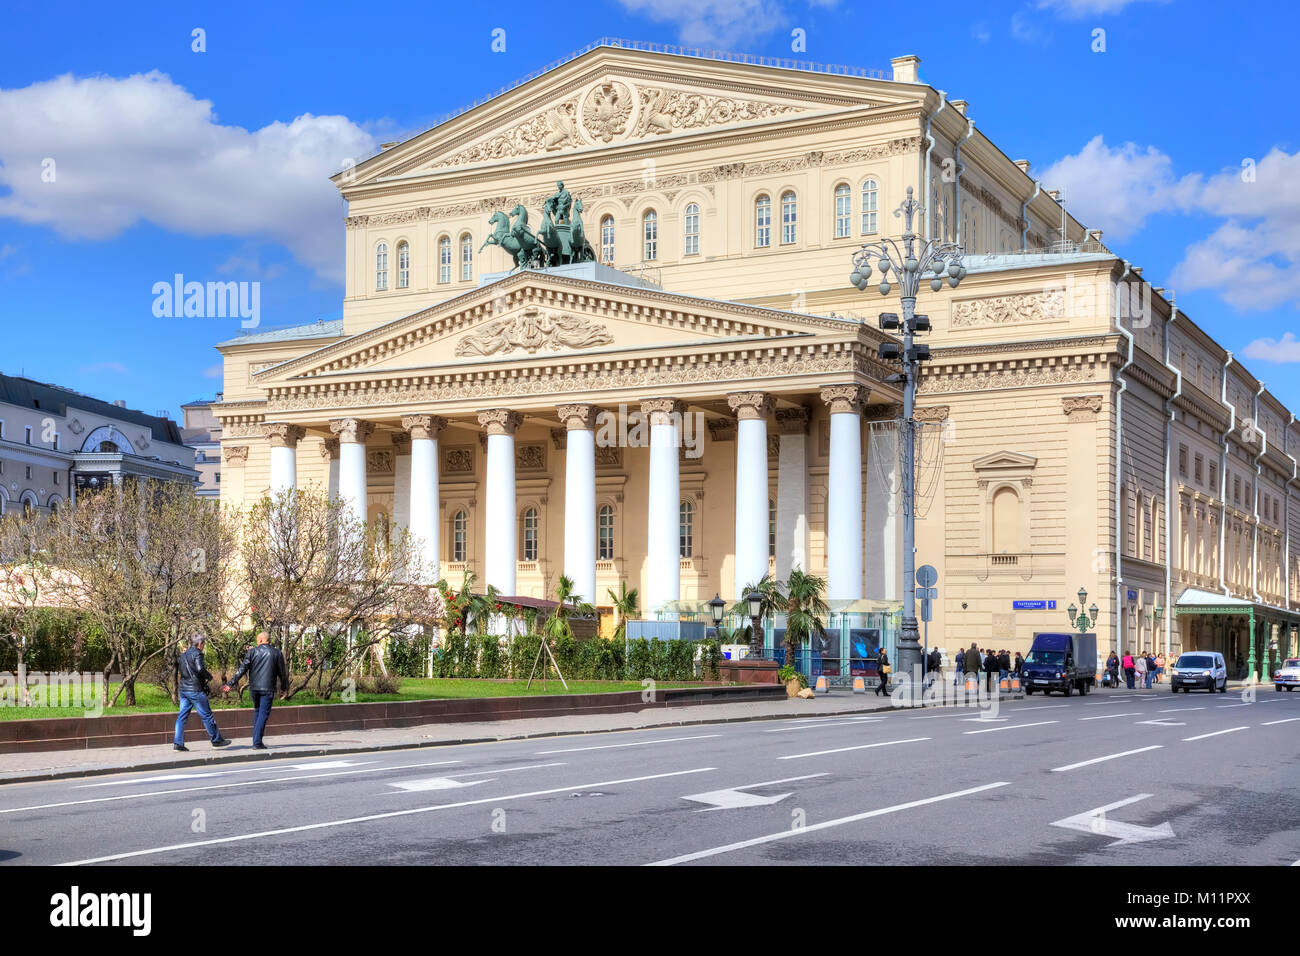 Russie, Moscou - avril 24,2016 : Etat Académique Théâtre Bolchoï de la Russie est l'un des plus importants en Russie et l'un des plus importants théâtres d'o Banque D'Images